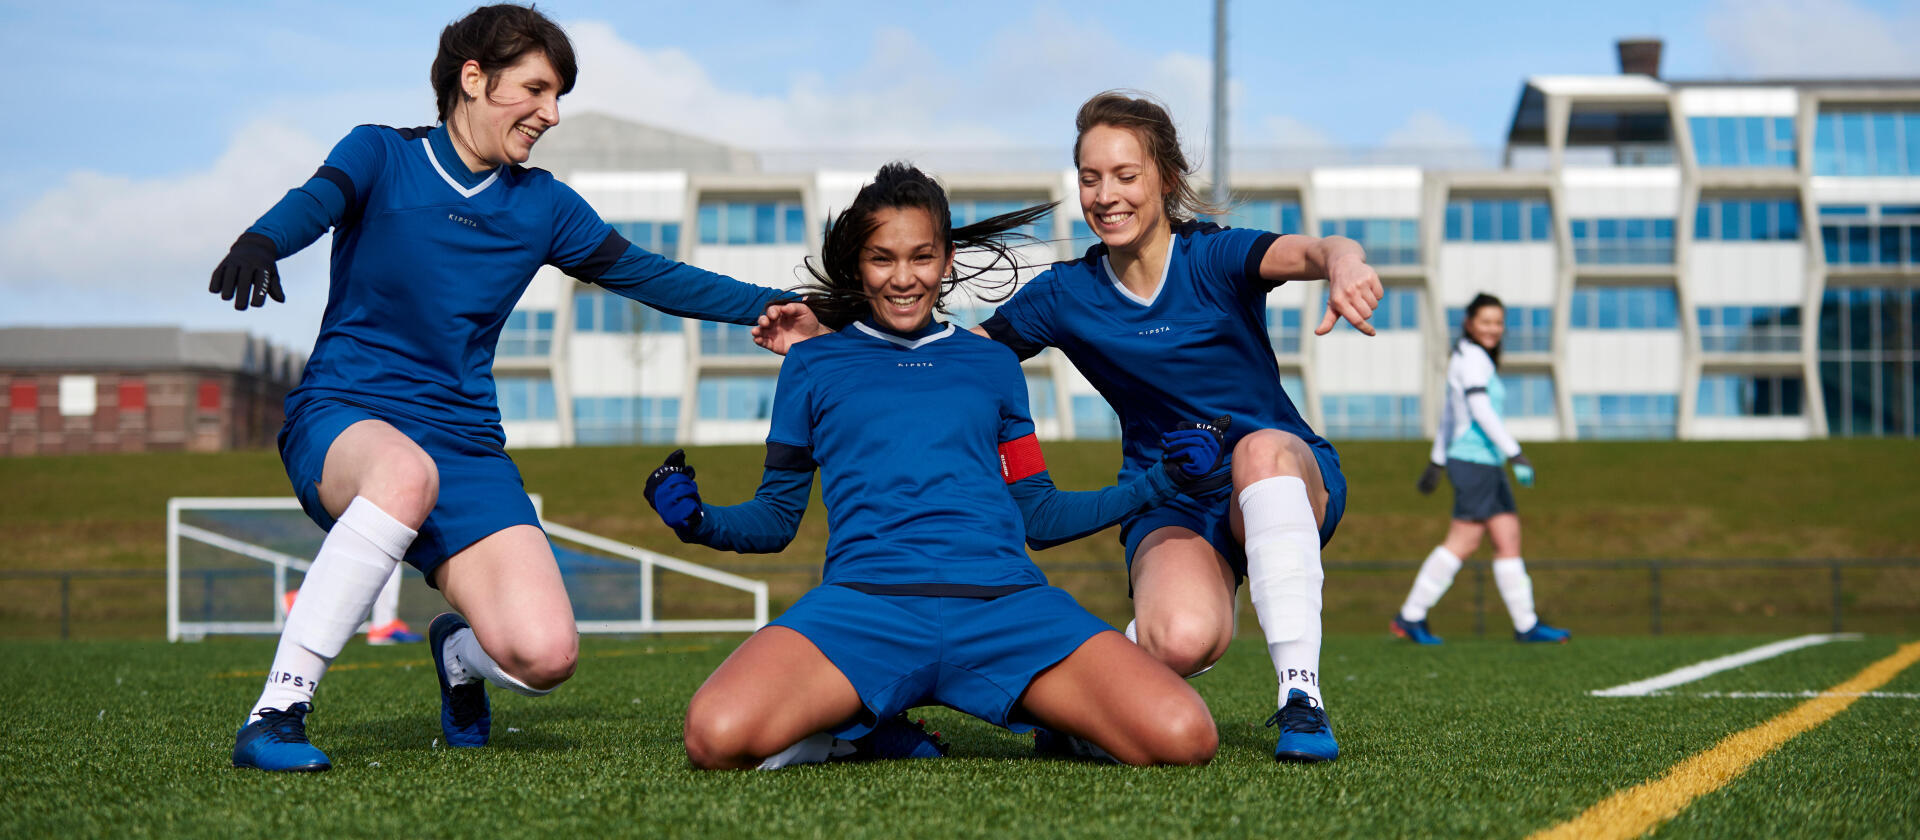 Women's football: a booming sport